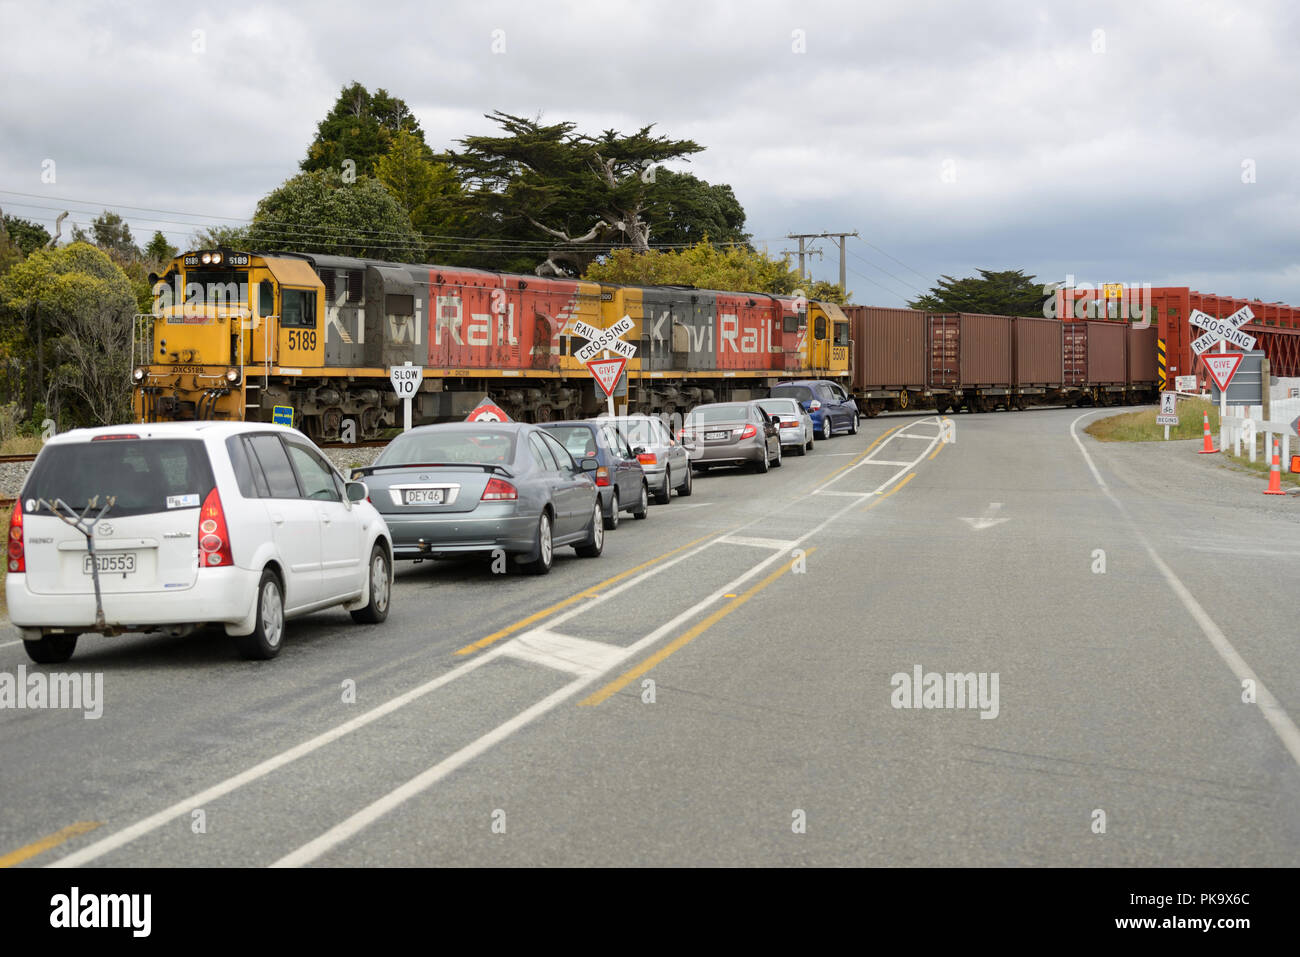 TARAMAKAU River, New Zealand, 18. NOVEMBER 2017: ein Güterzug hält den Verkehr an der historischen Straße-Schiene Brücke über den Taramakau River in der Nähe von Greymouth, Neuseeland Stockfoto